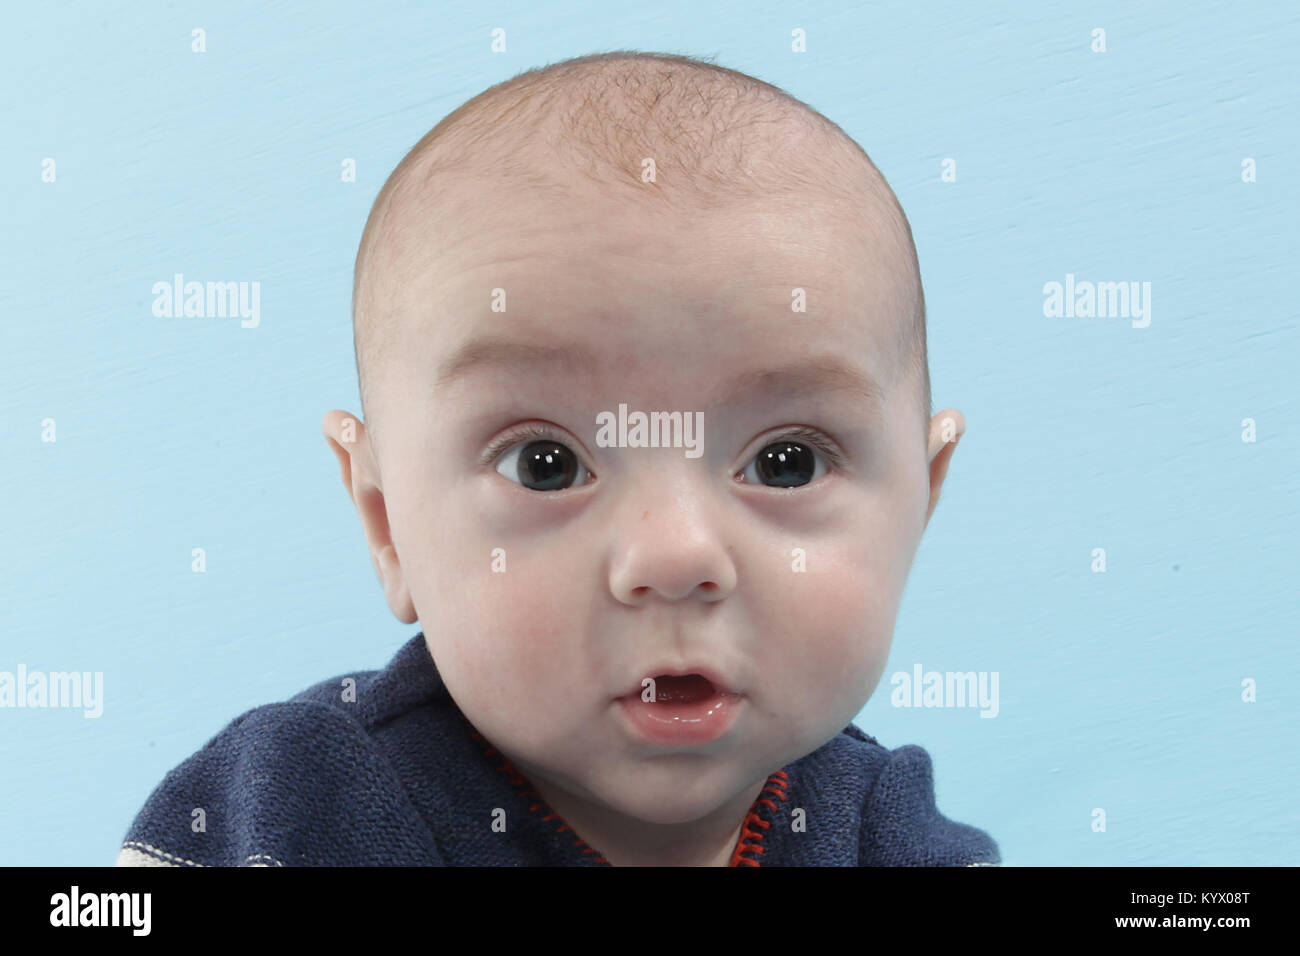 12 semaine Bébé garçon explorant sur soft couverture bleue Banque D'Images